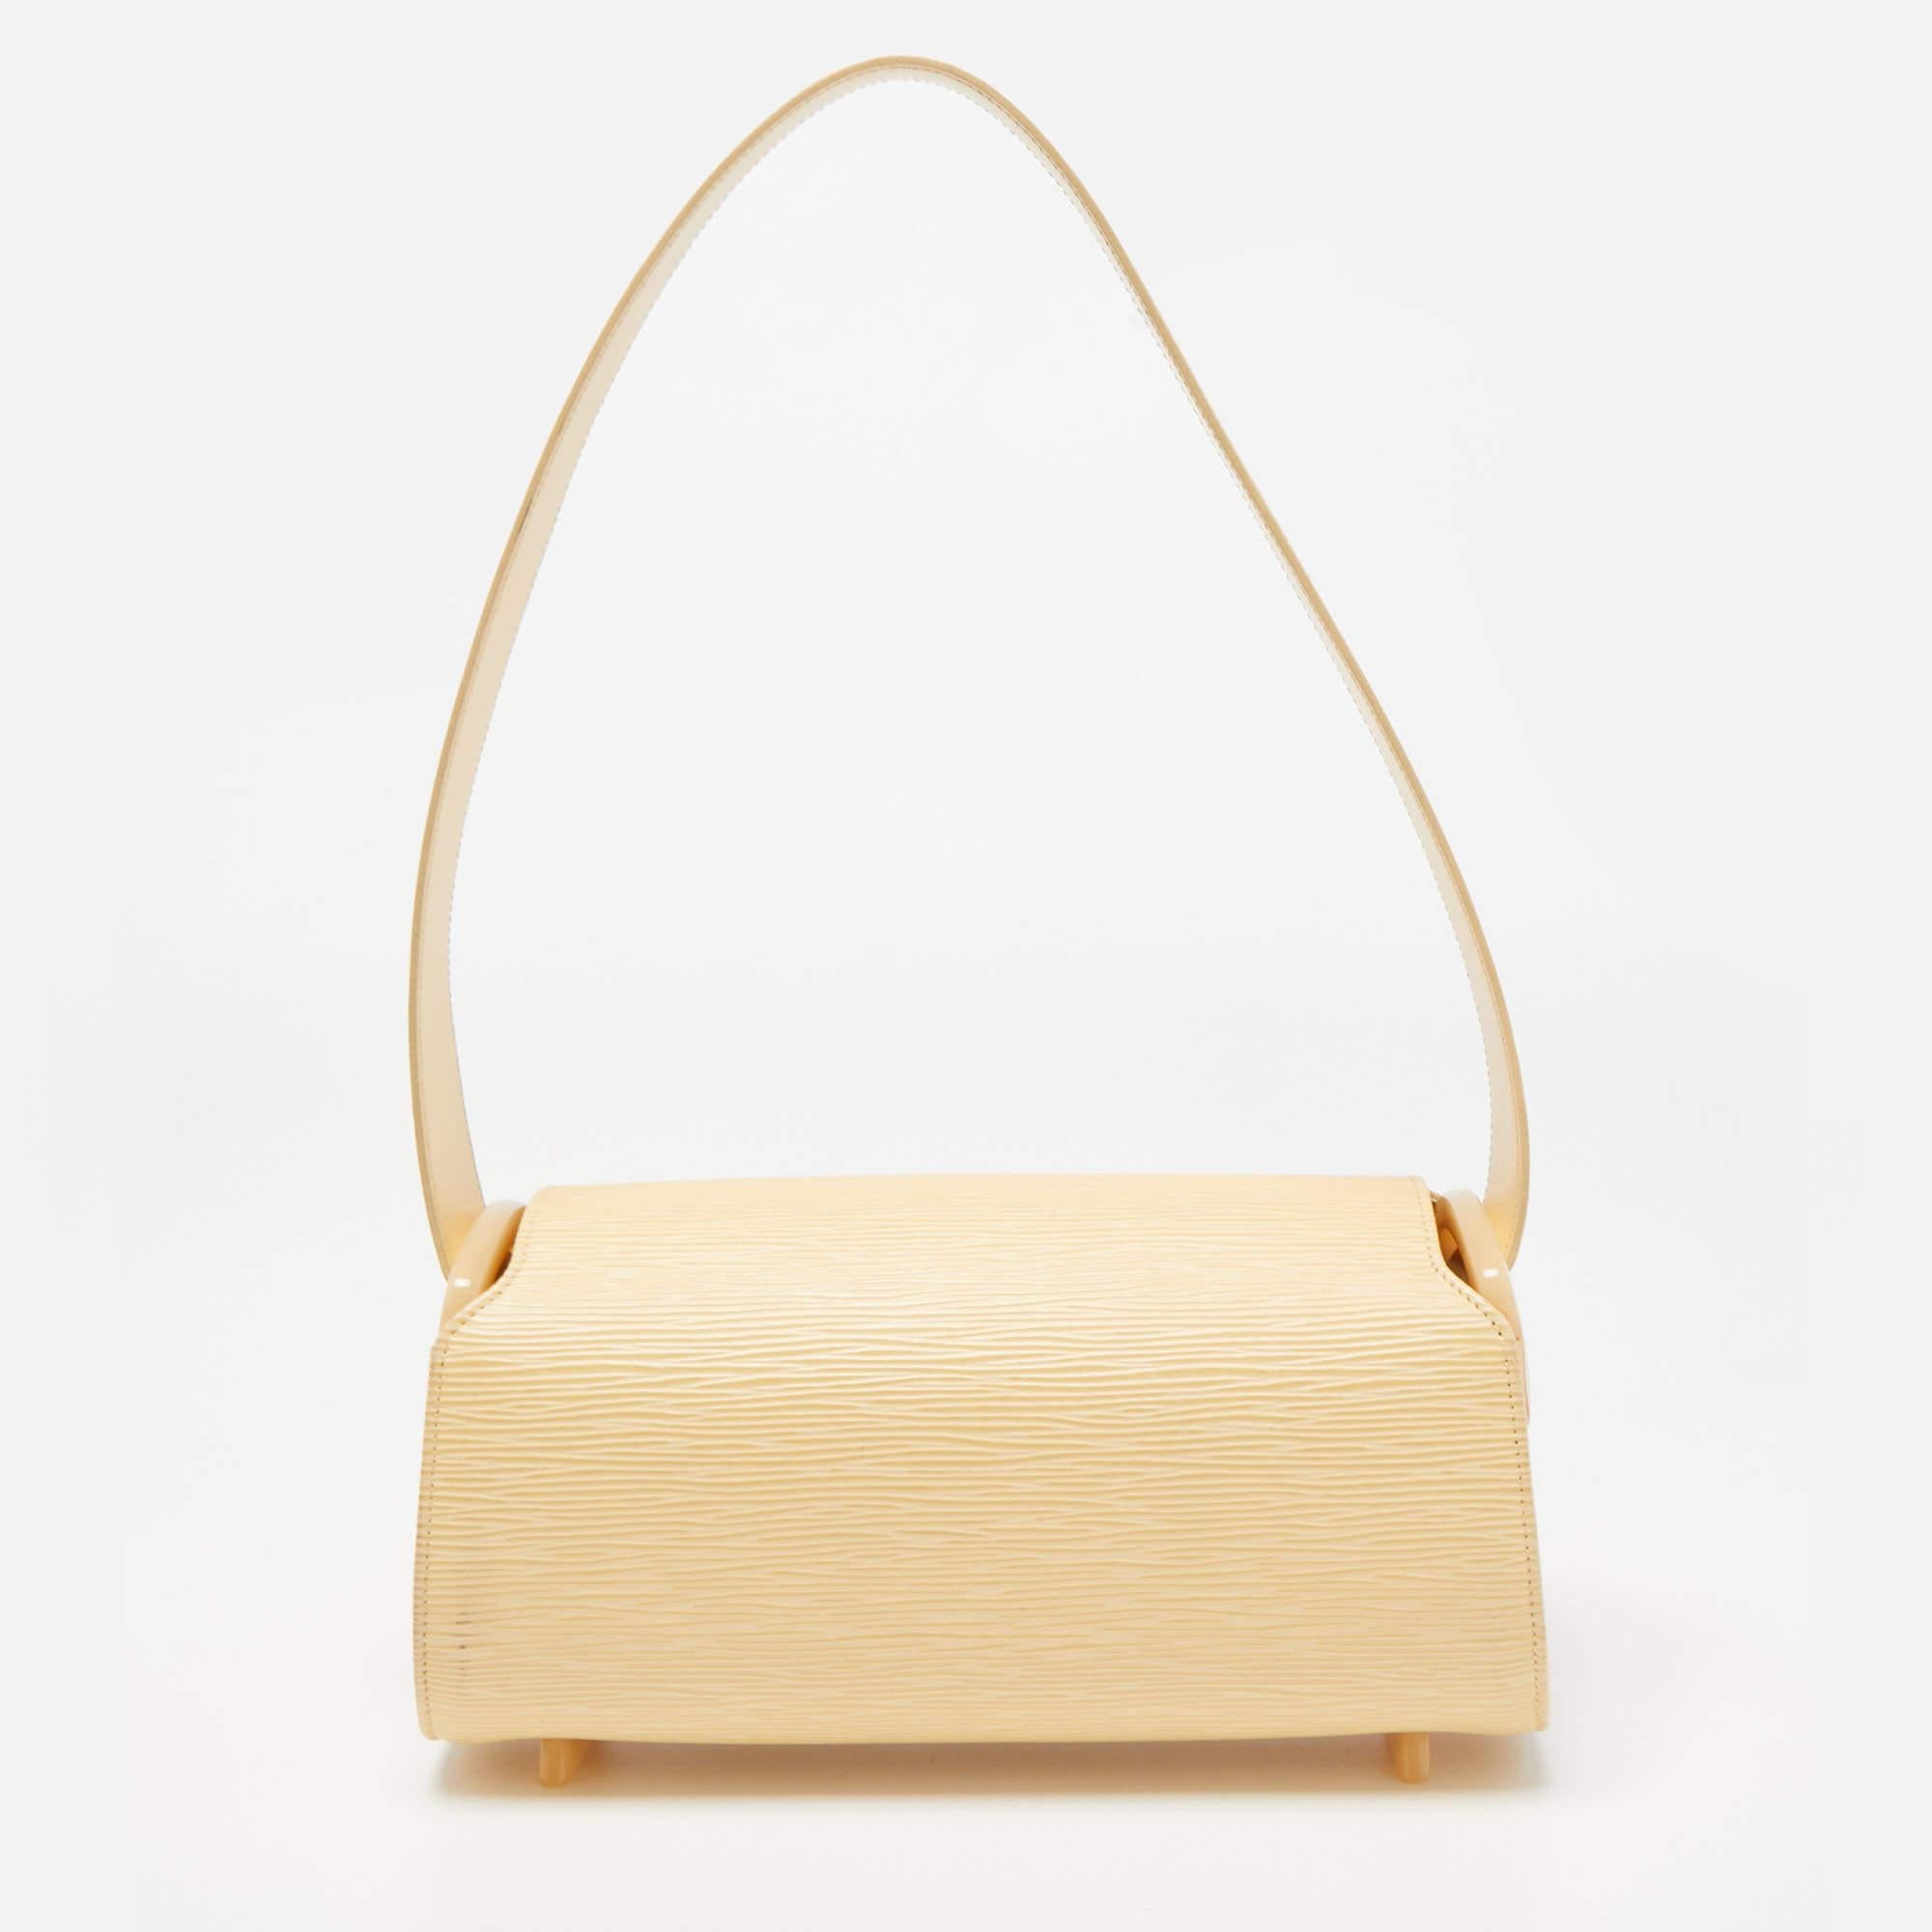 Sold at Auction: Louis Vuitton, Louis Vuitton Epi Nocturne Handbag or Purse.